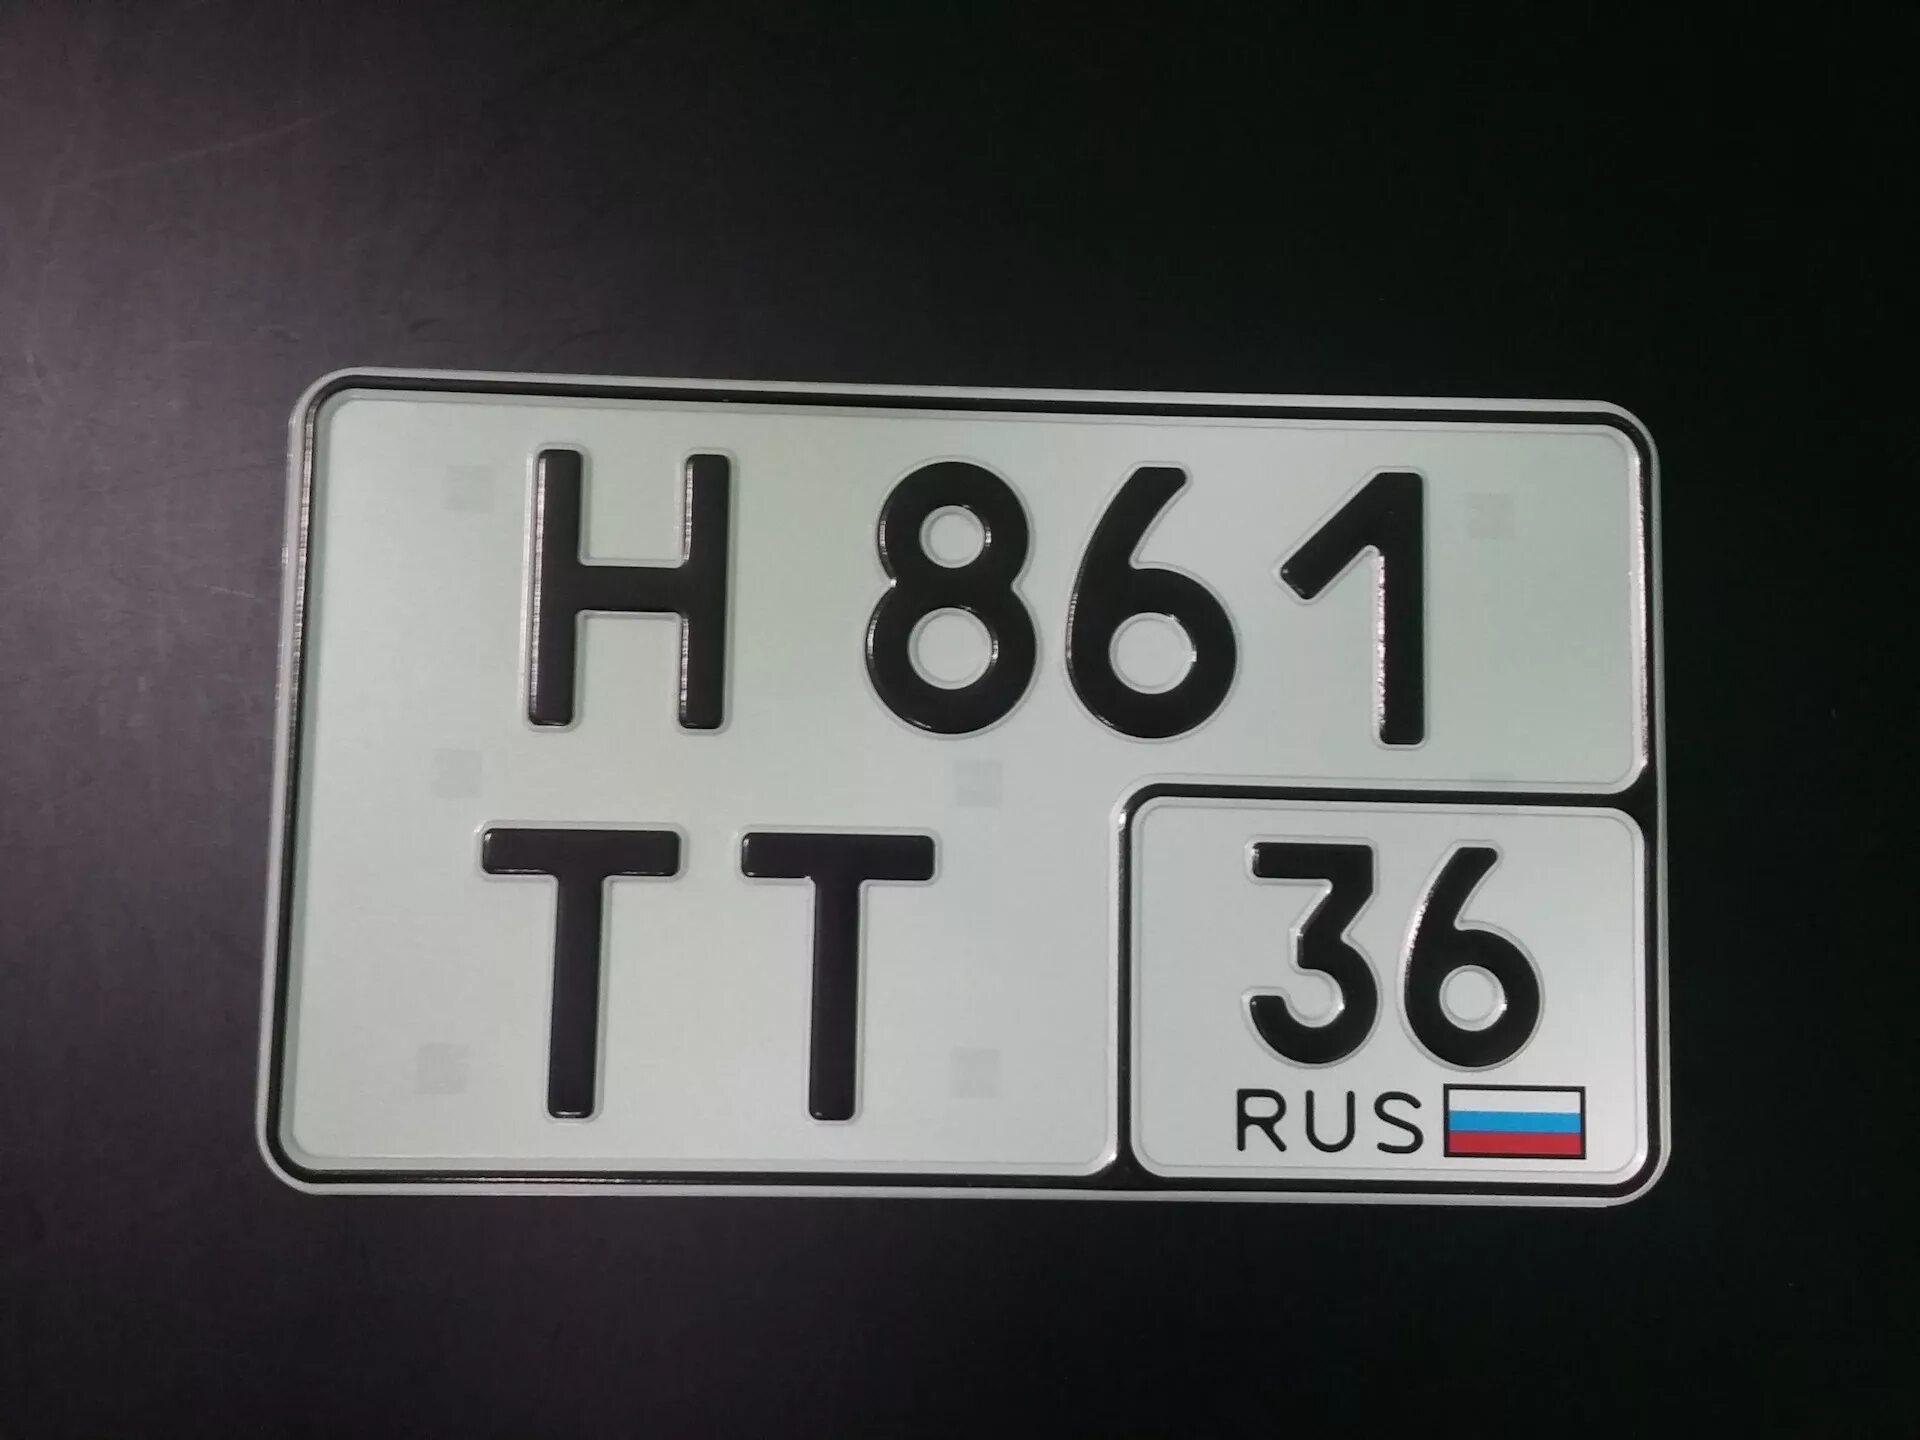 5 от 1700. Квадратный номерной знак. Российские квадратные номера на авто. Квадратный гос номер. Квадратный номерной знак на авто.